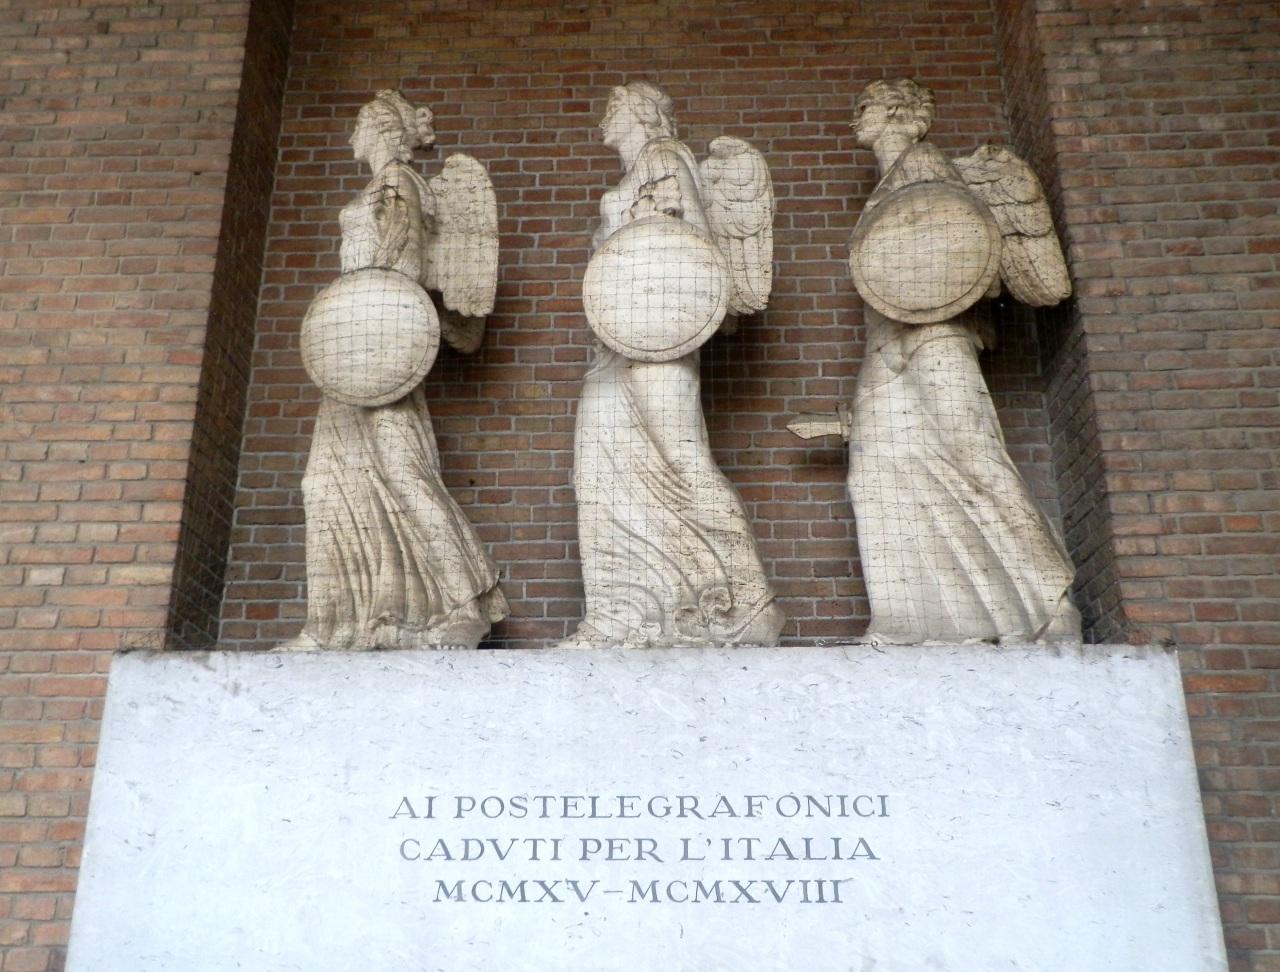 Monumento ai caduti postelegrafonici, allegoria della Vittoria come donna vestita all'antica